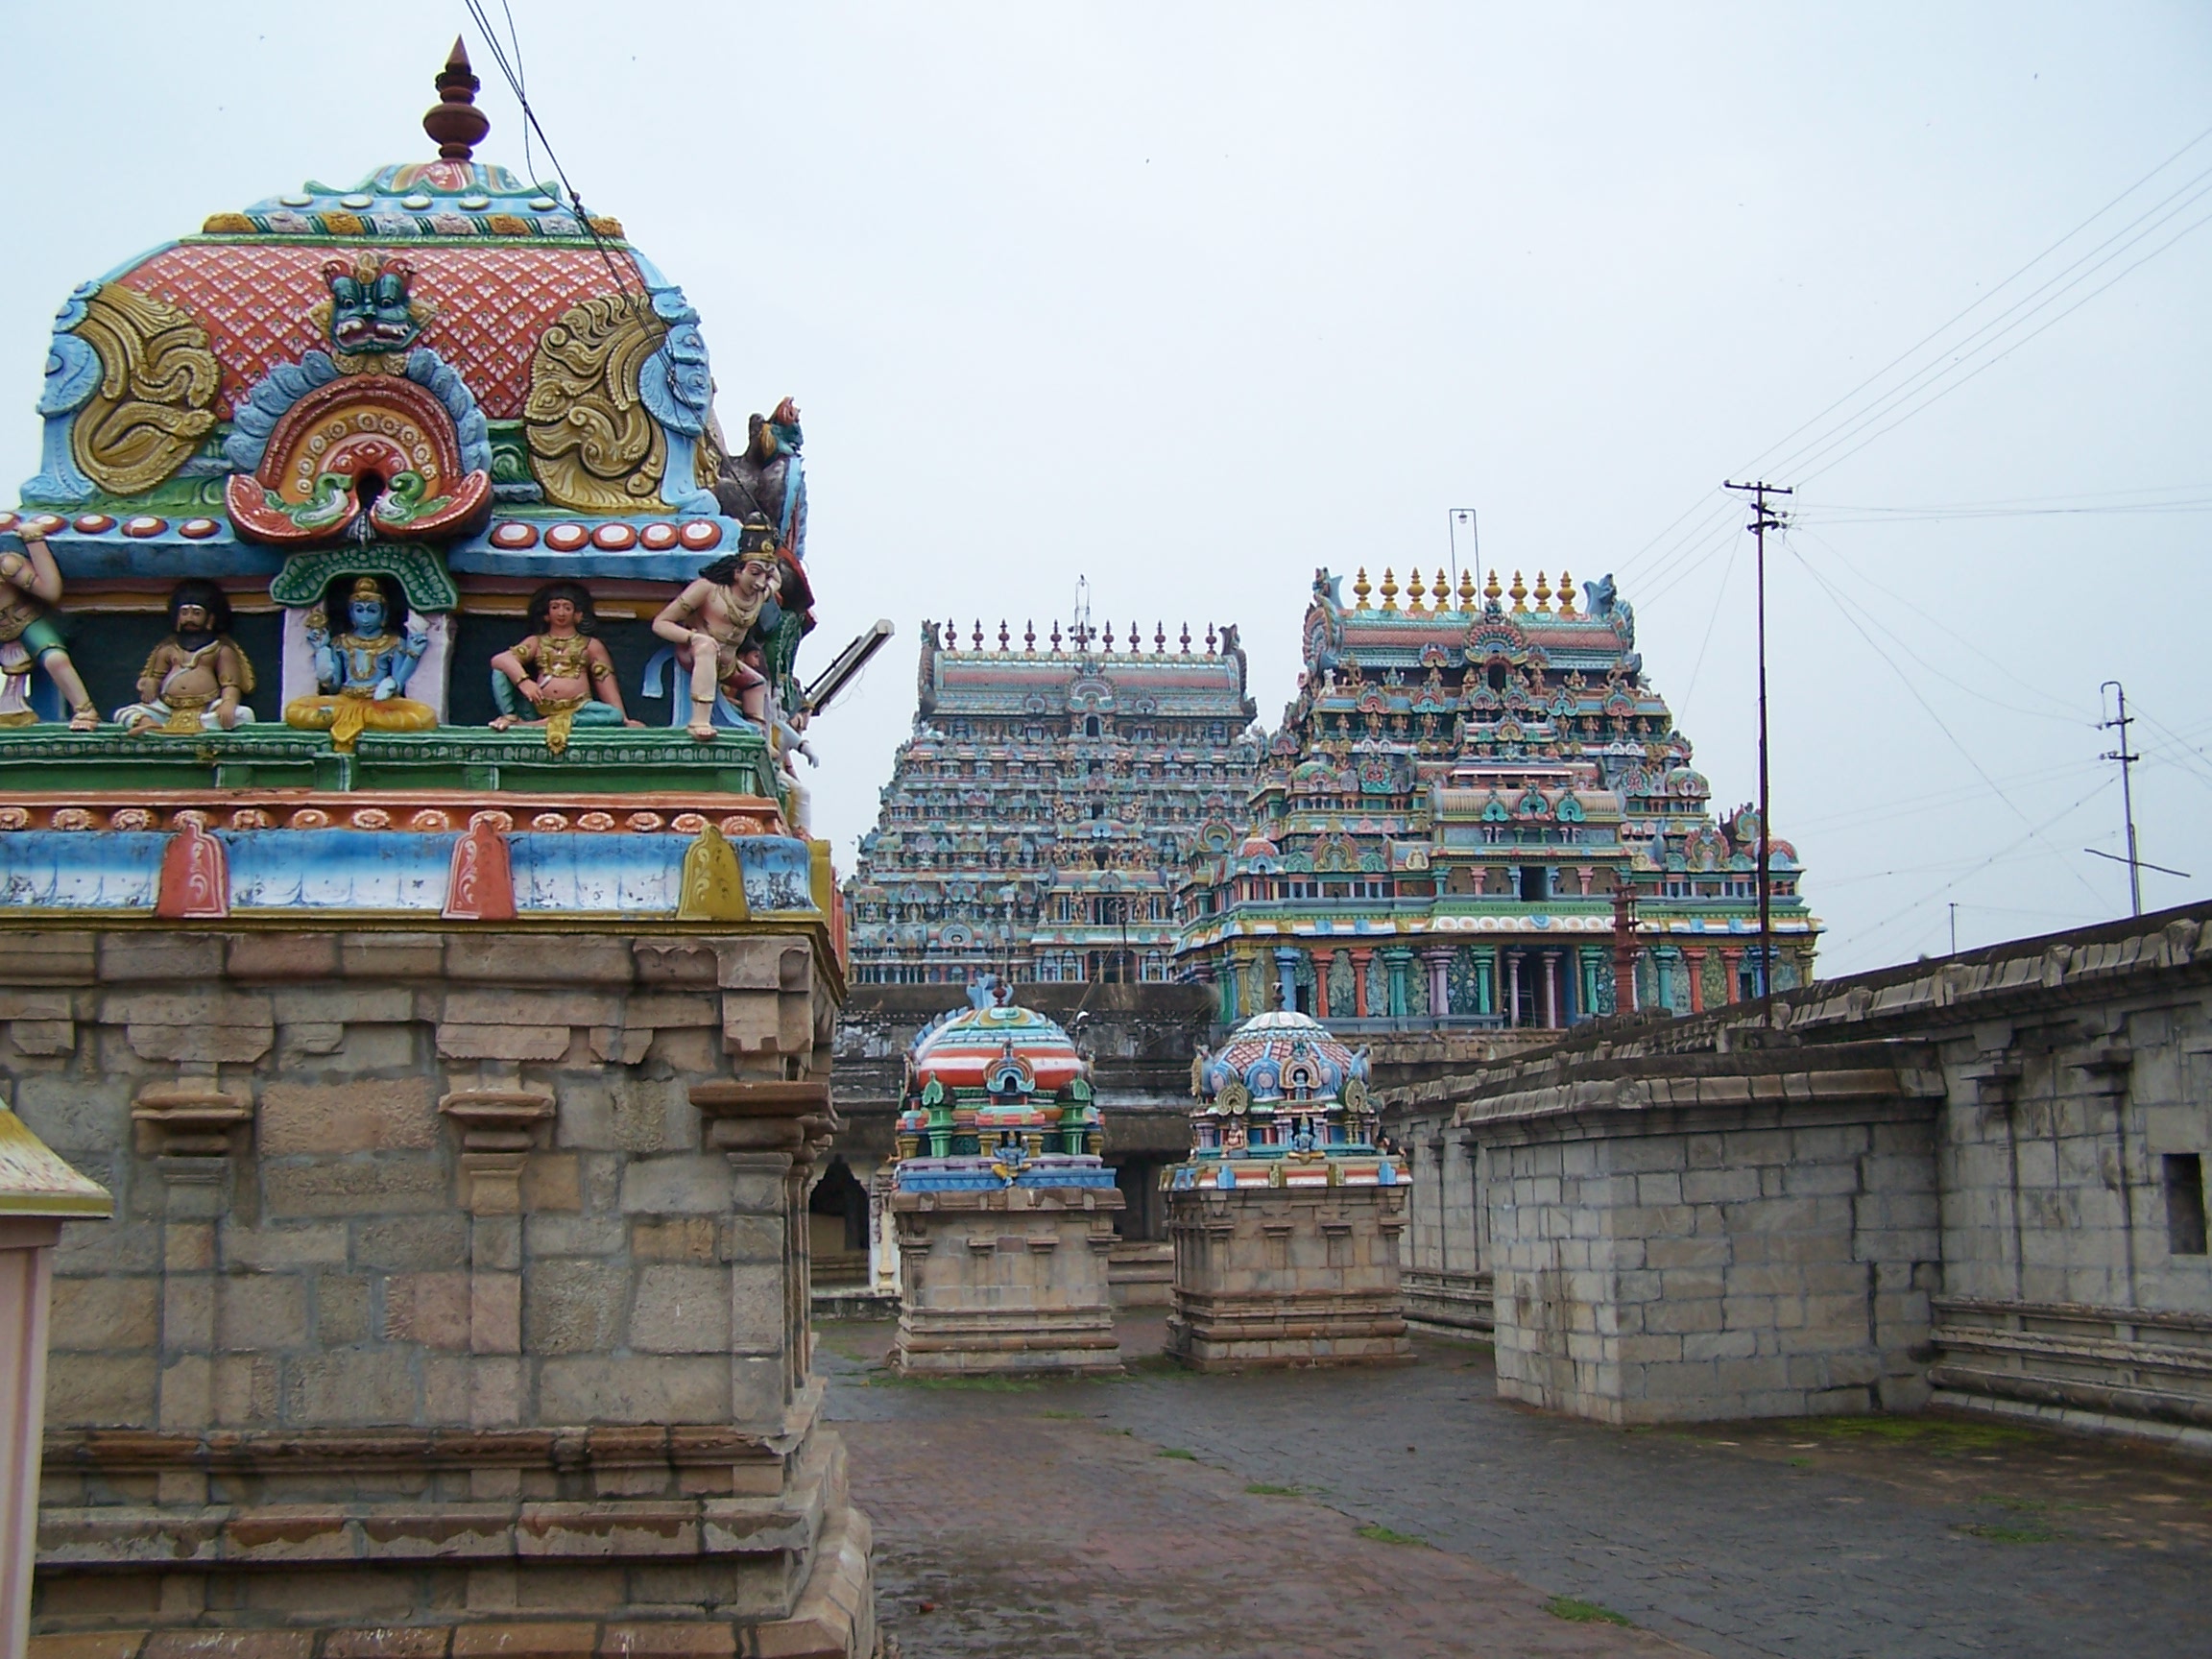 திருவாரூர் தியாகராஜர் கோயில் - தமிழ் விக்கிப்பீடியா